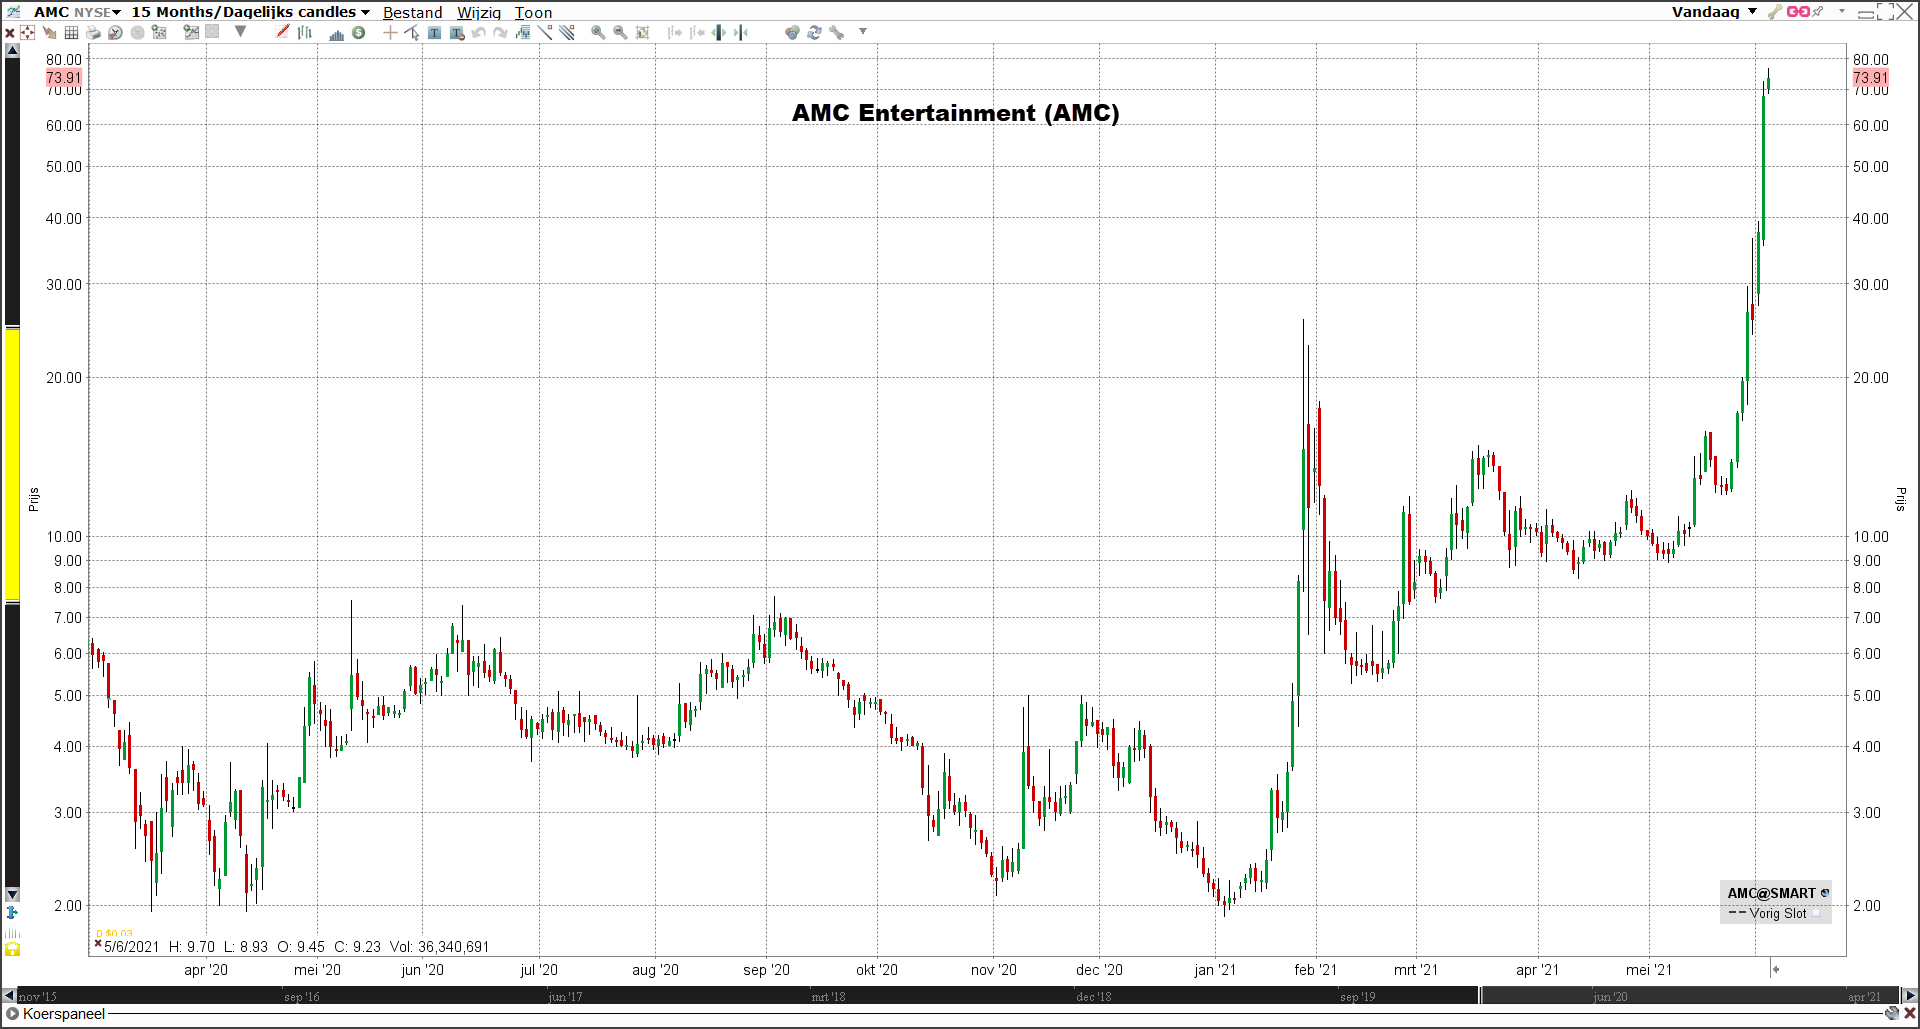 AMC stock | AMC stock price | AMC stock news | AMC stock forecast | Meme stocks | Reddit forum | Reddit stocks